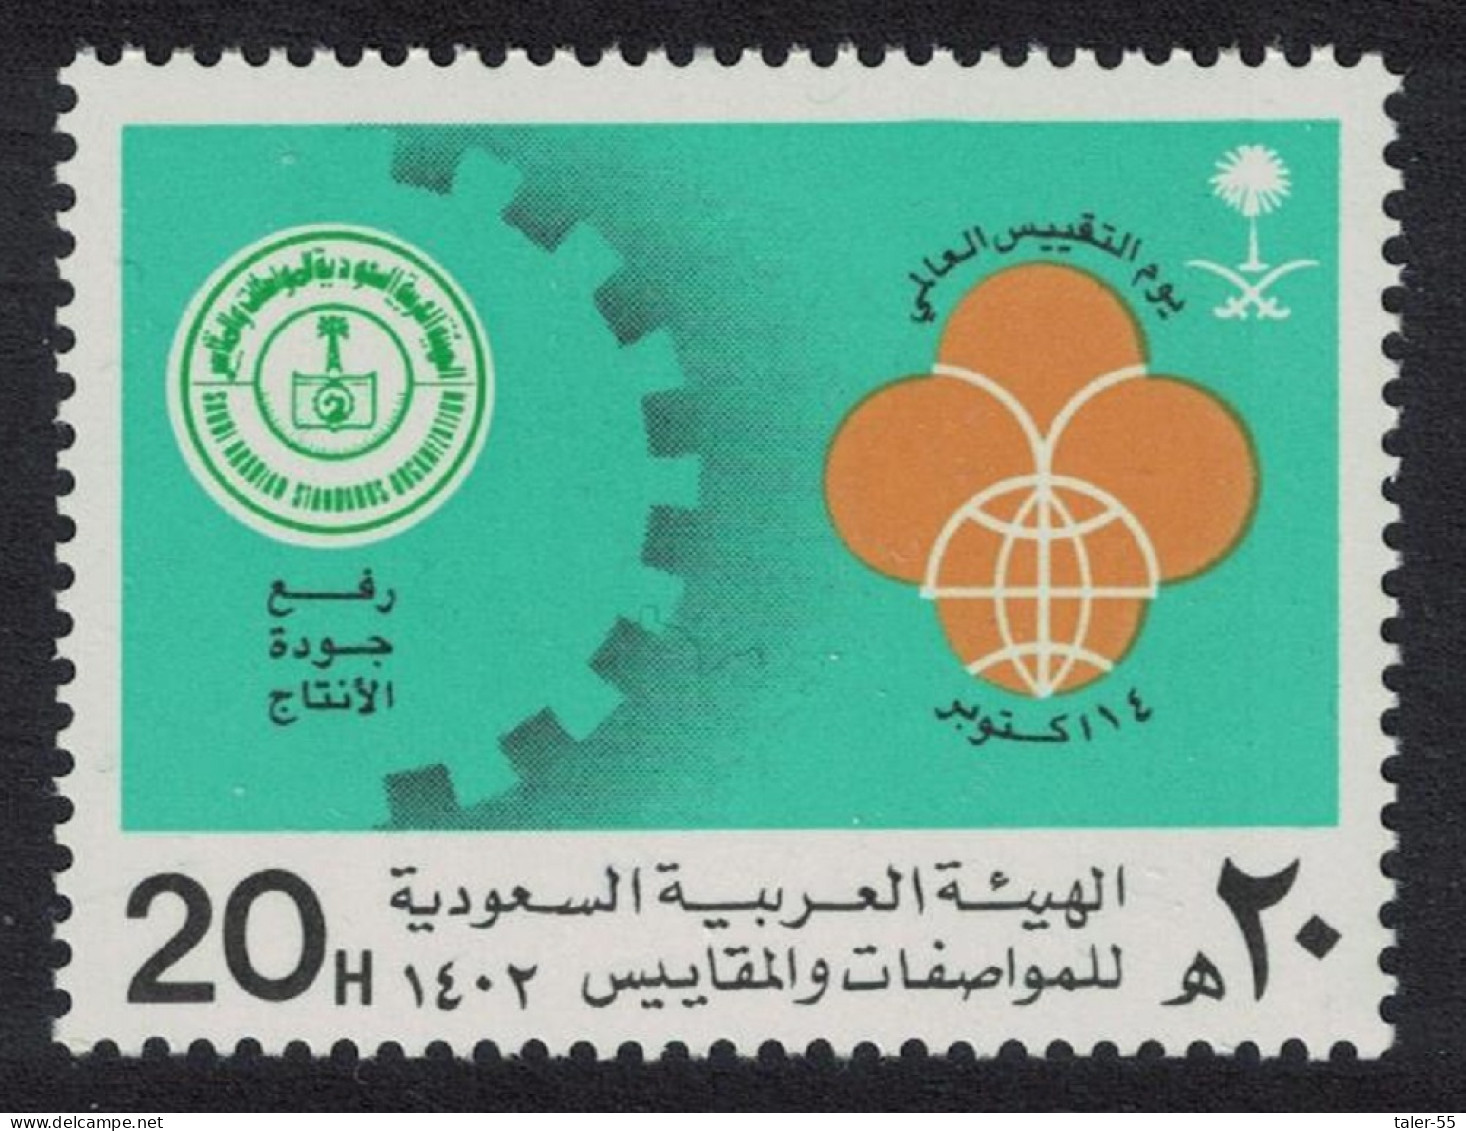 Saudi Arabia World Standards Day 1982 MNH SG#1342 - Saudi Arabia